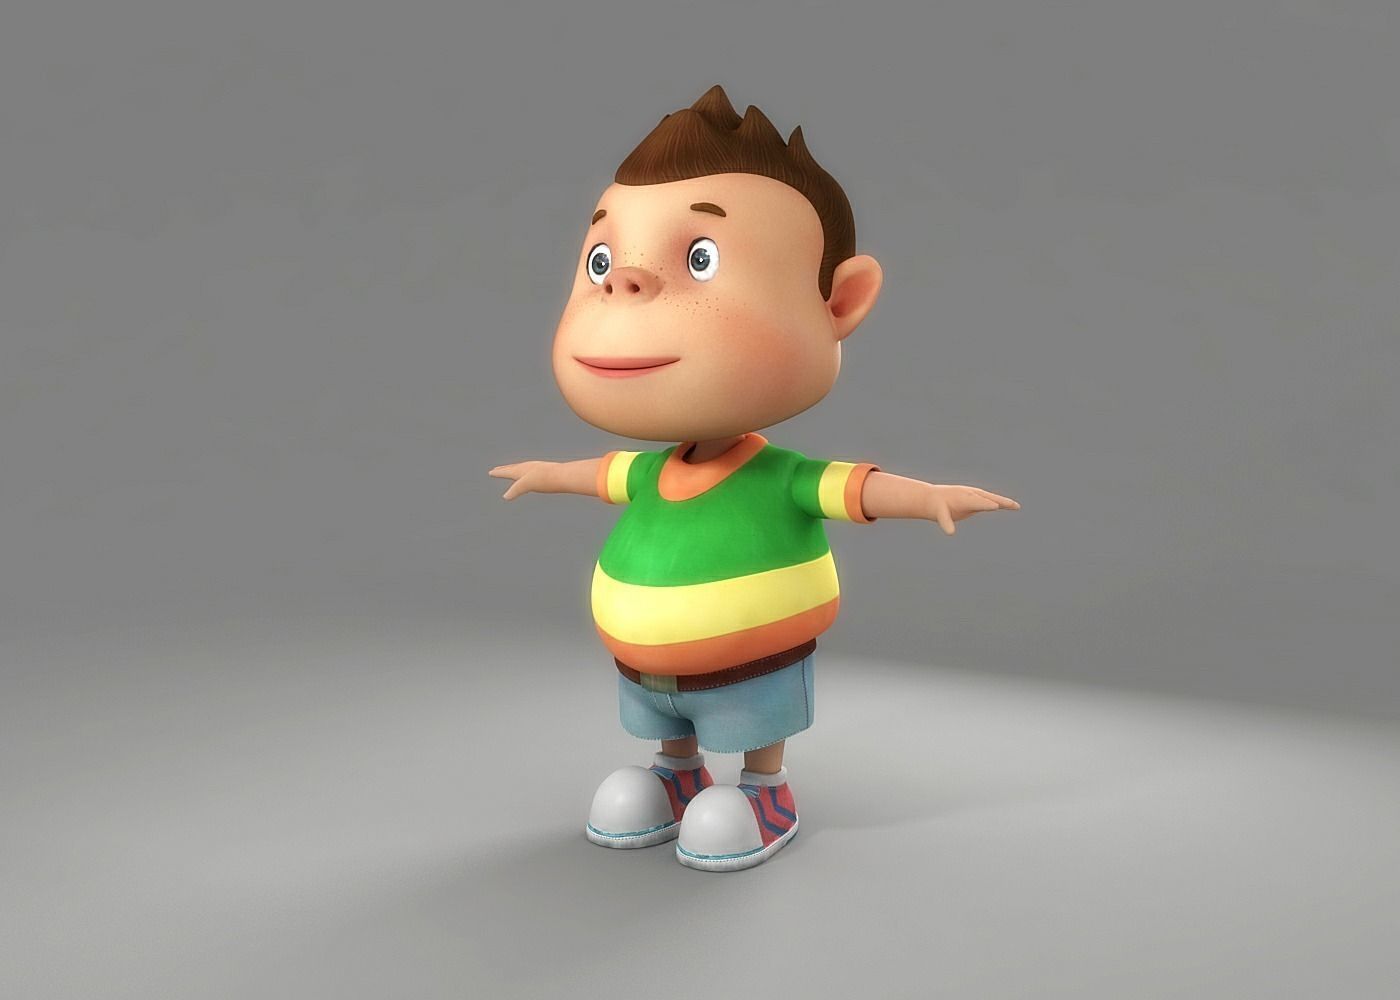 دانلود مدل سه بعدی کارتونی پسر بچه 3D Cartoon Boy